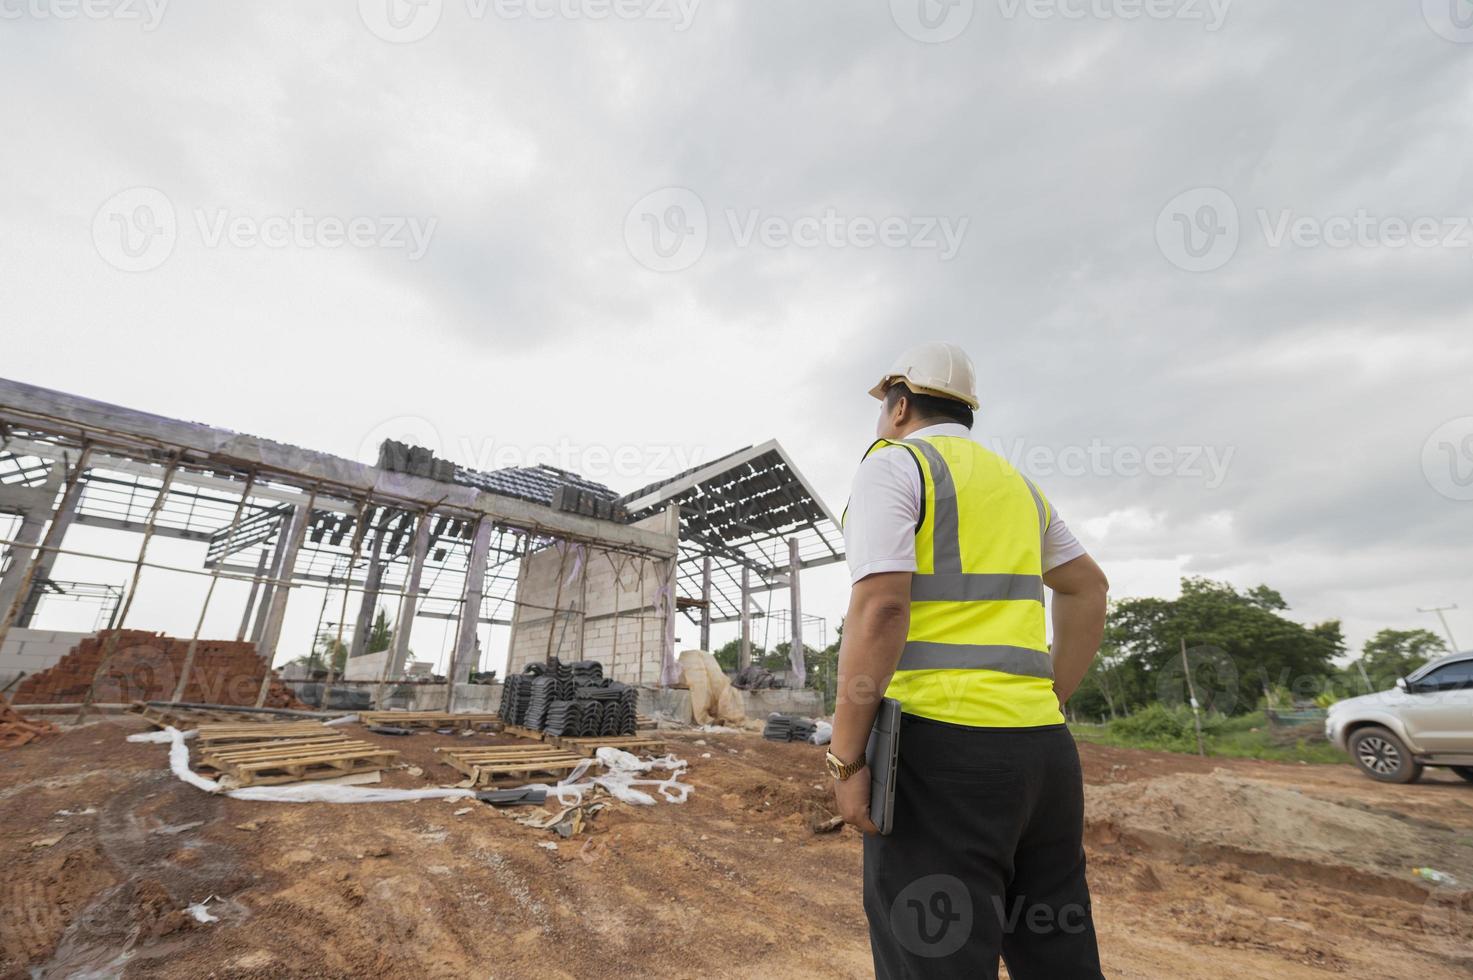 engenheiros e arquitetos supervisionam a construção de casas em canteiros de obras residenciais. foto